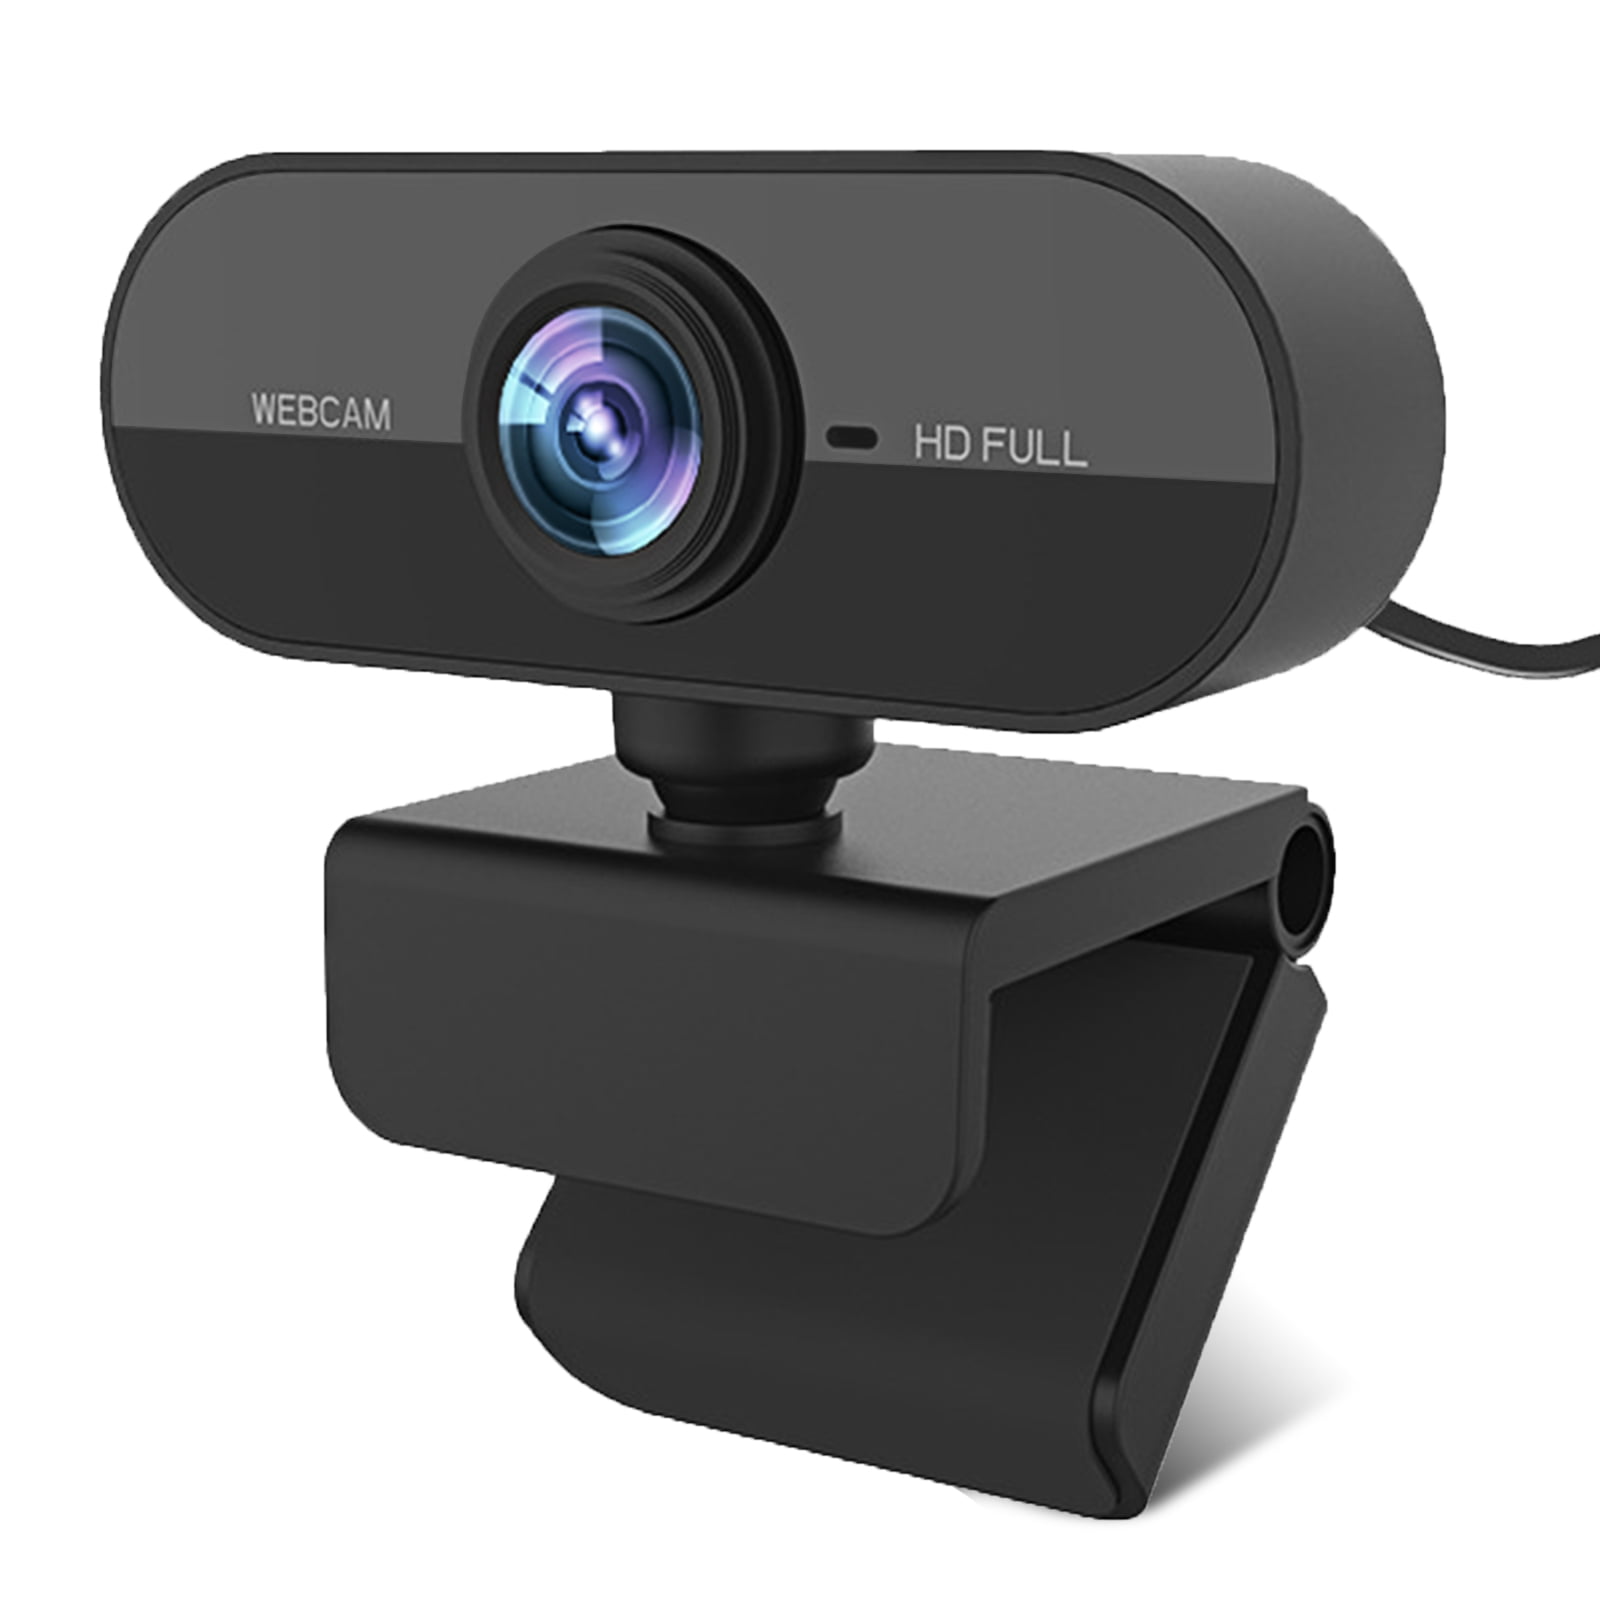 1080p Hd Webcam Usb Desktop Laptop Web Camera Auto Focus Webcam With Built In Noise Cancelling